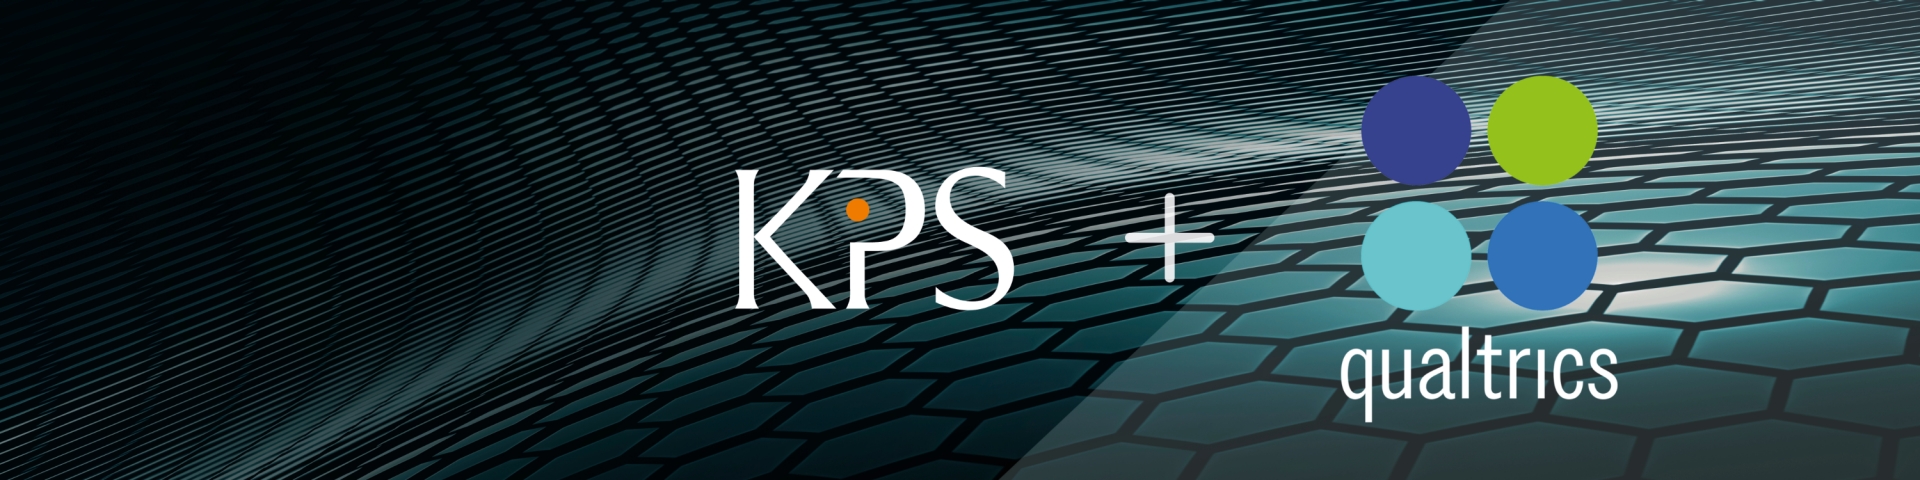 Logos von KPS und Qualtrics auf abstraktem Hintergrund